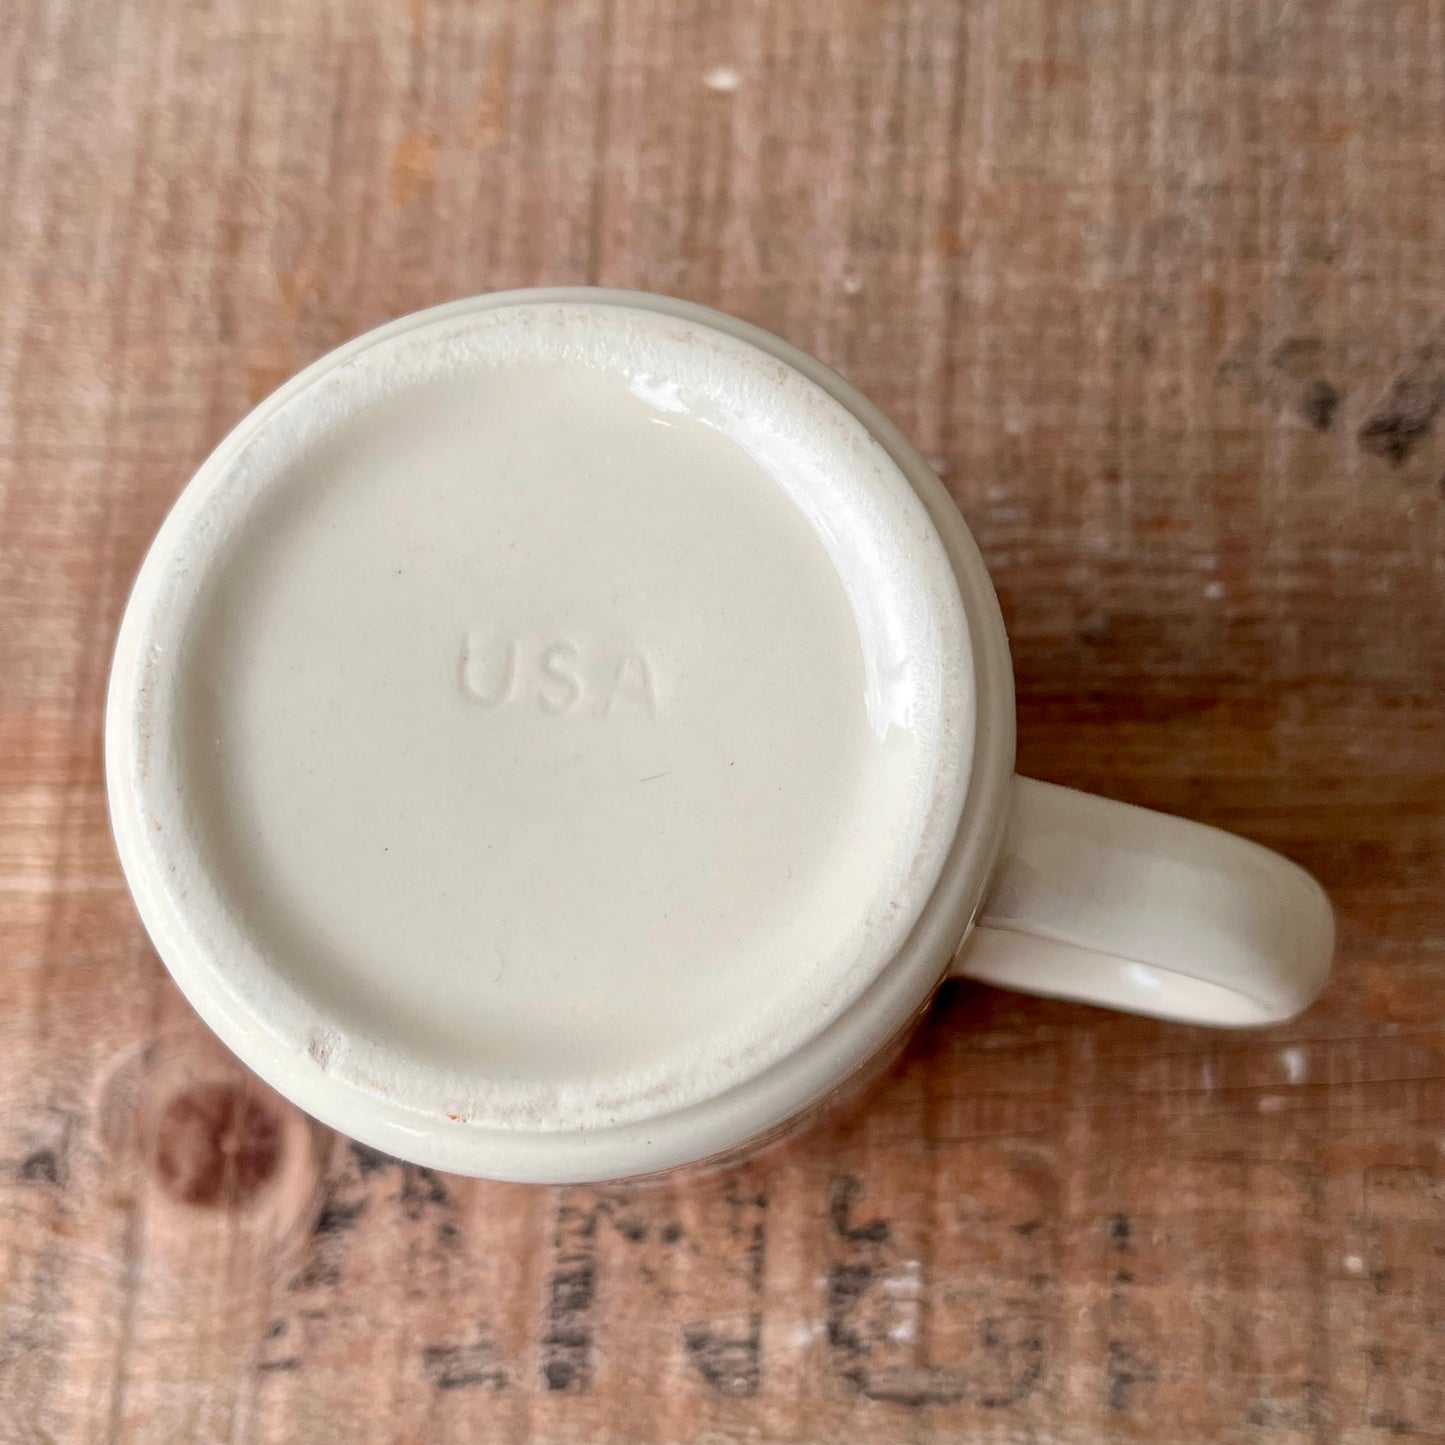 【USA vintage】Campbell’s Tomato Soup Mug